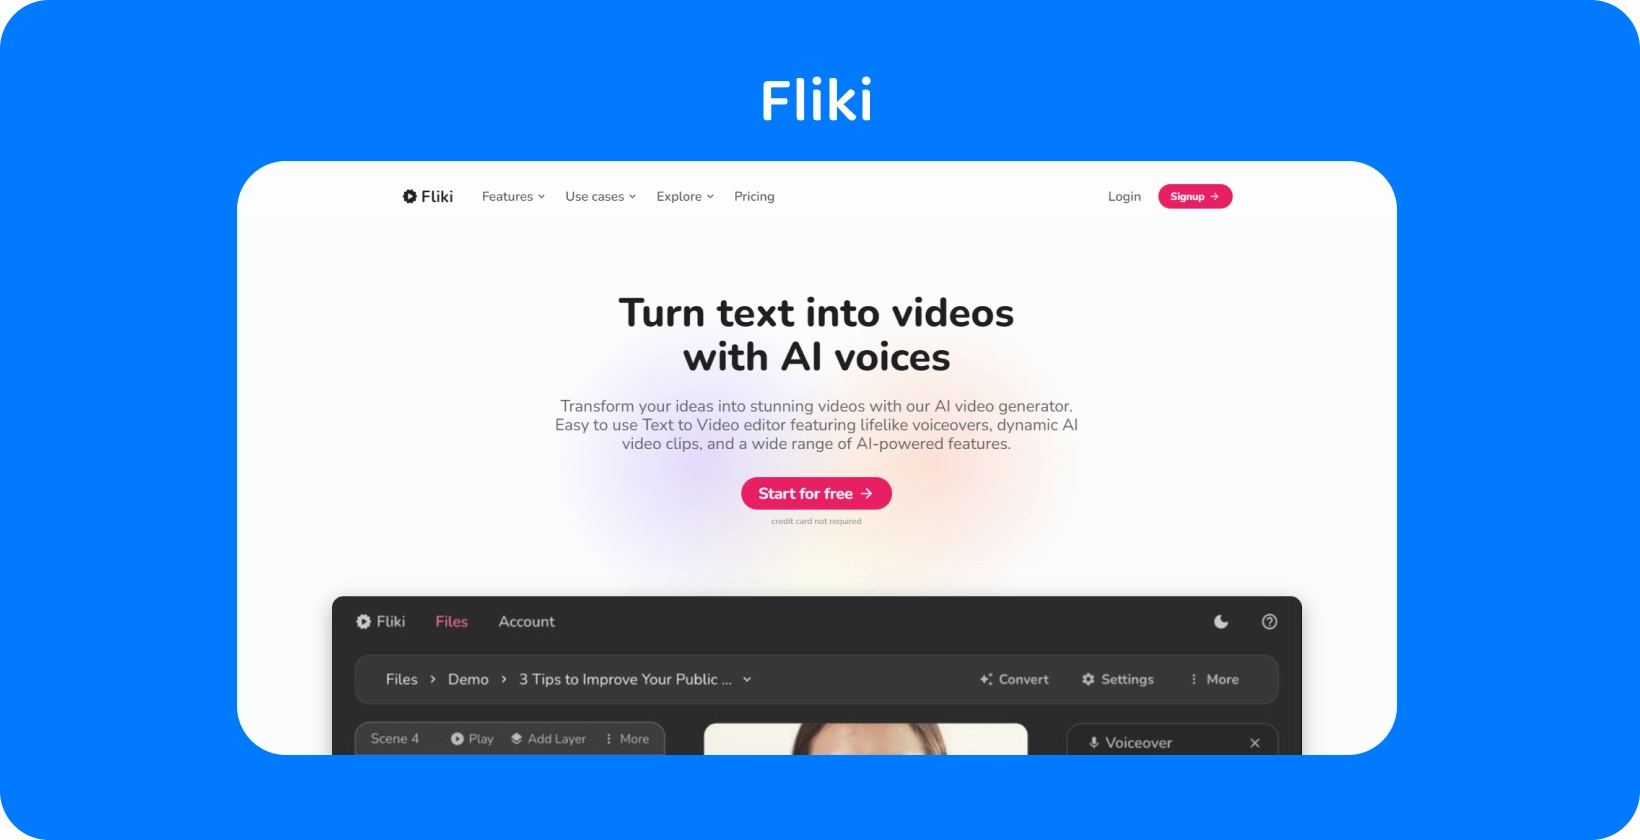 La página de la plataforma de Fliki muestra cómo convertir texto en videos con voces AI, ofreciendo una experiencia de edición de texto a video.